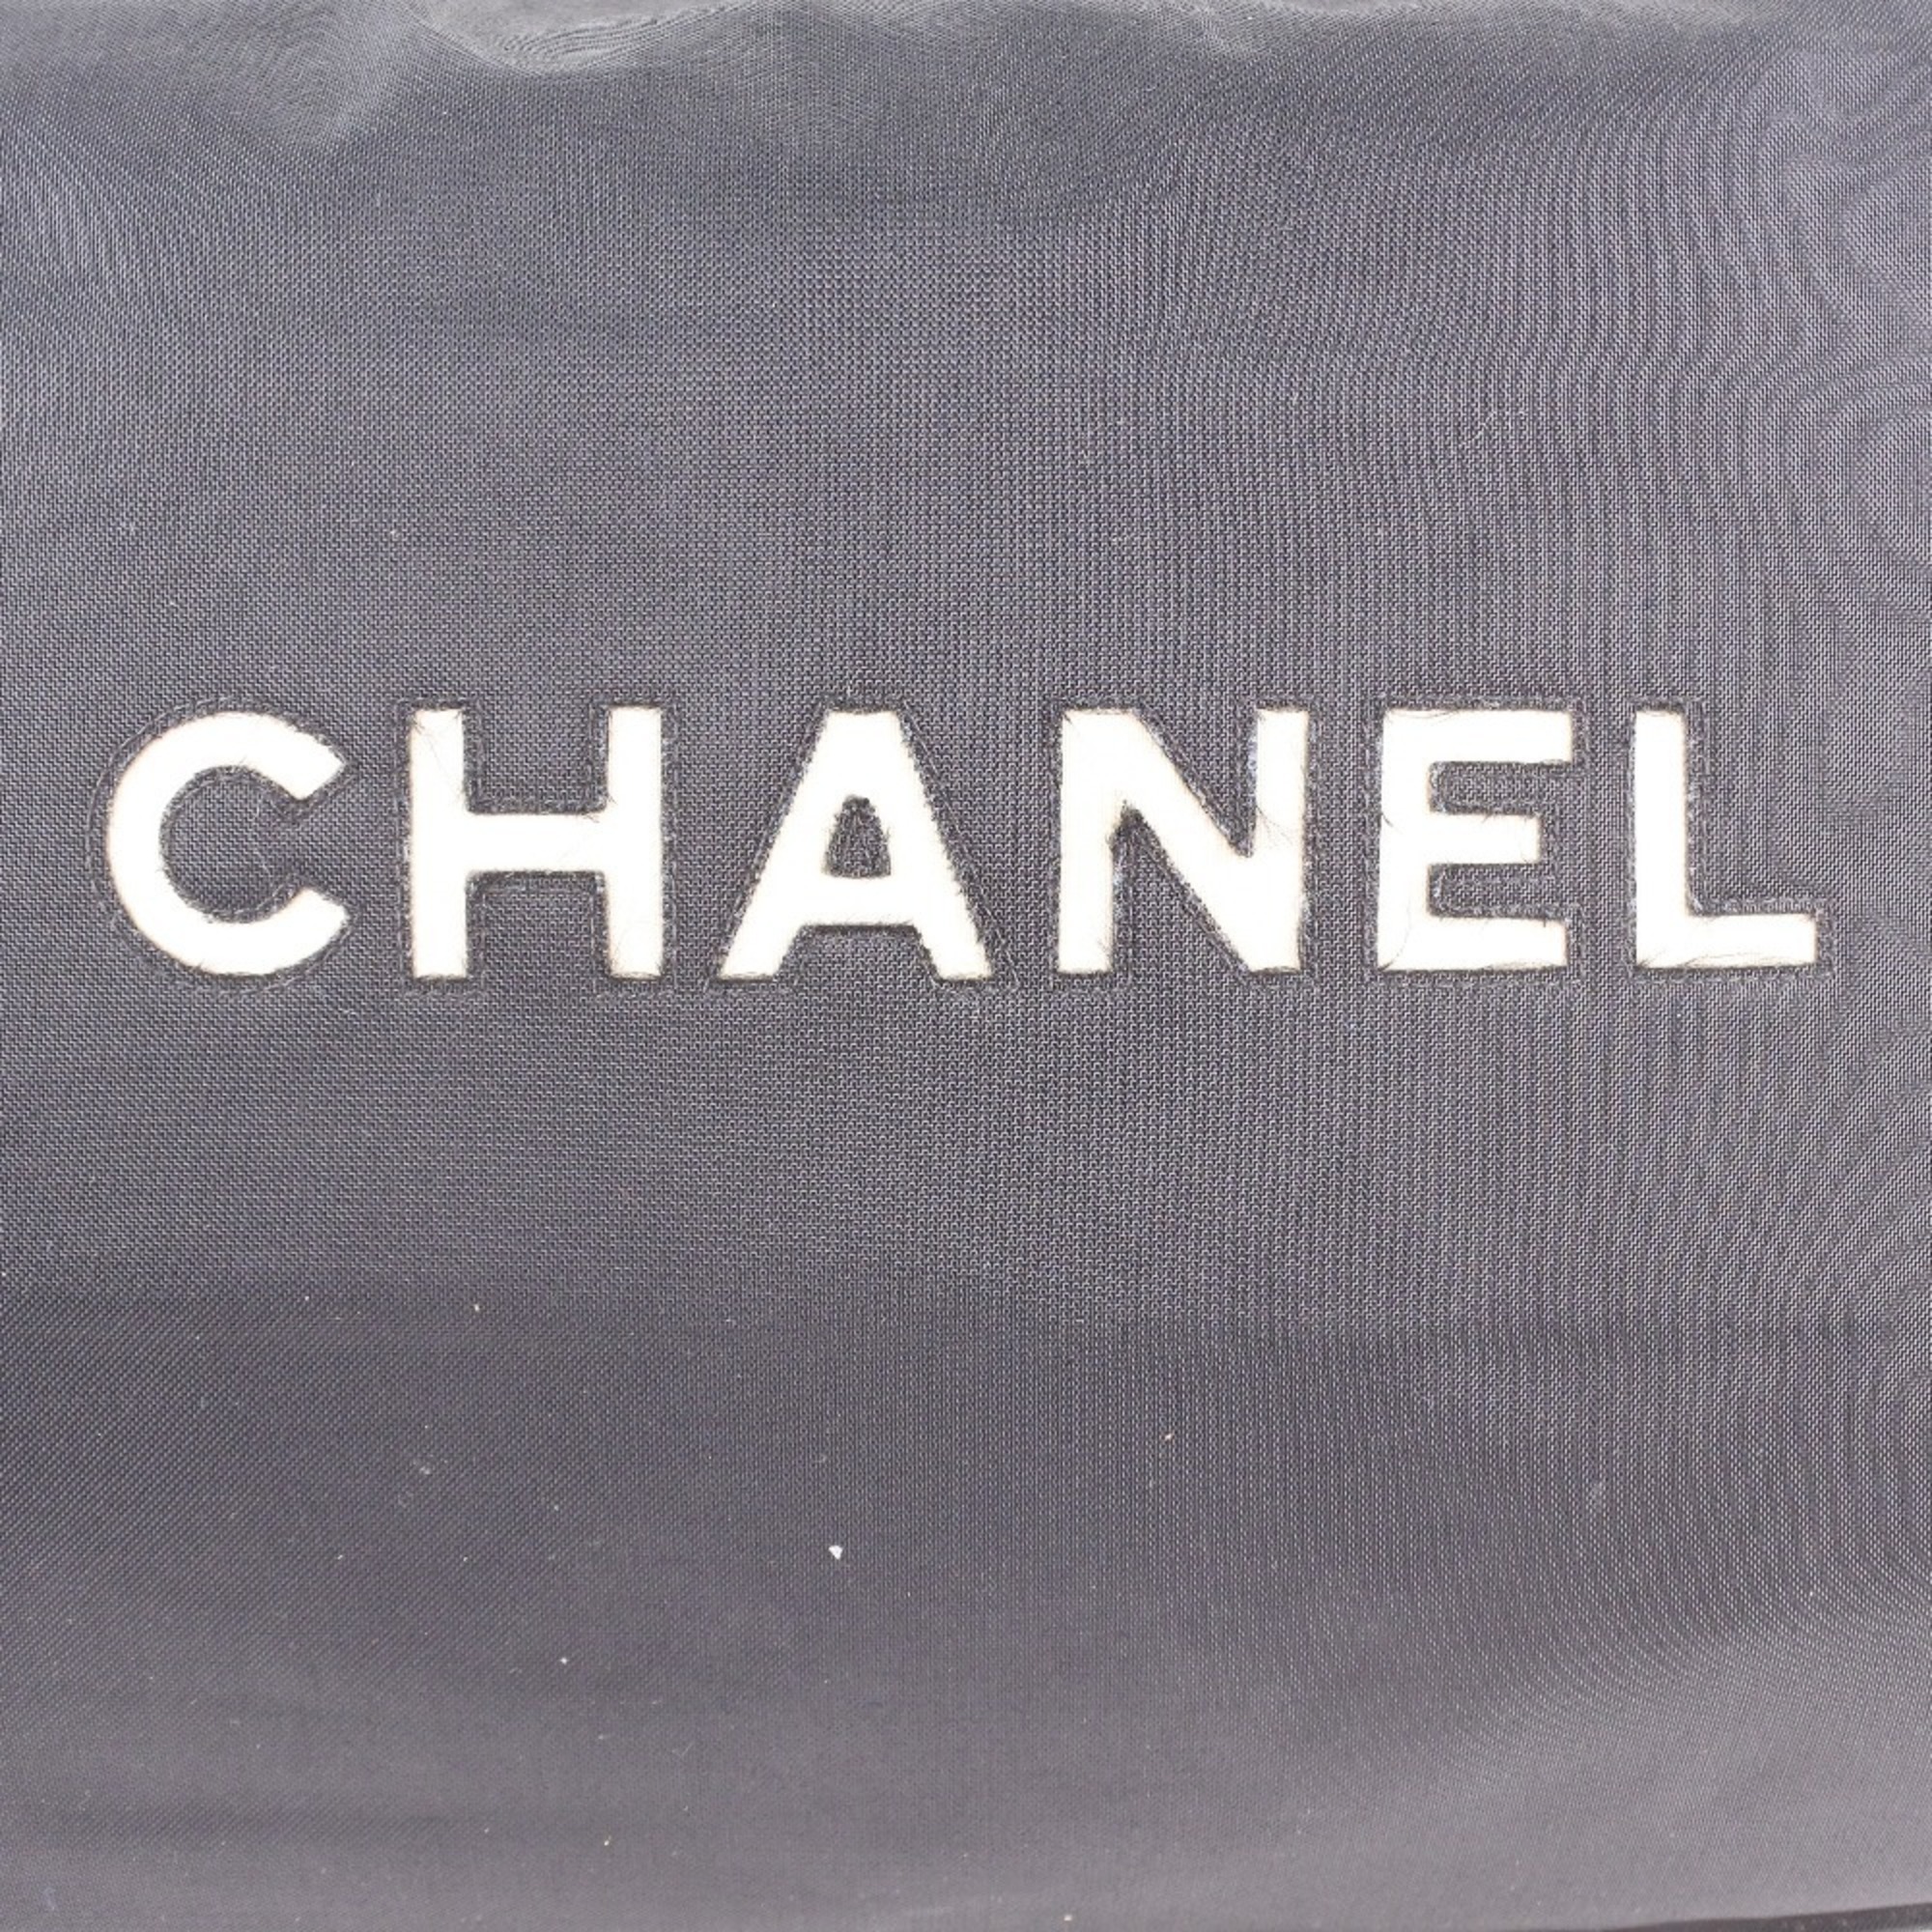 CHANEL Chanel Chain Coco Mark Nylon Black Women's Tote Bag